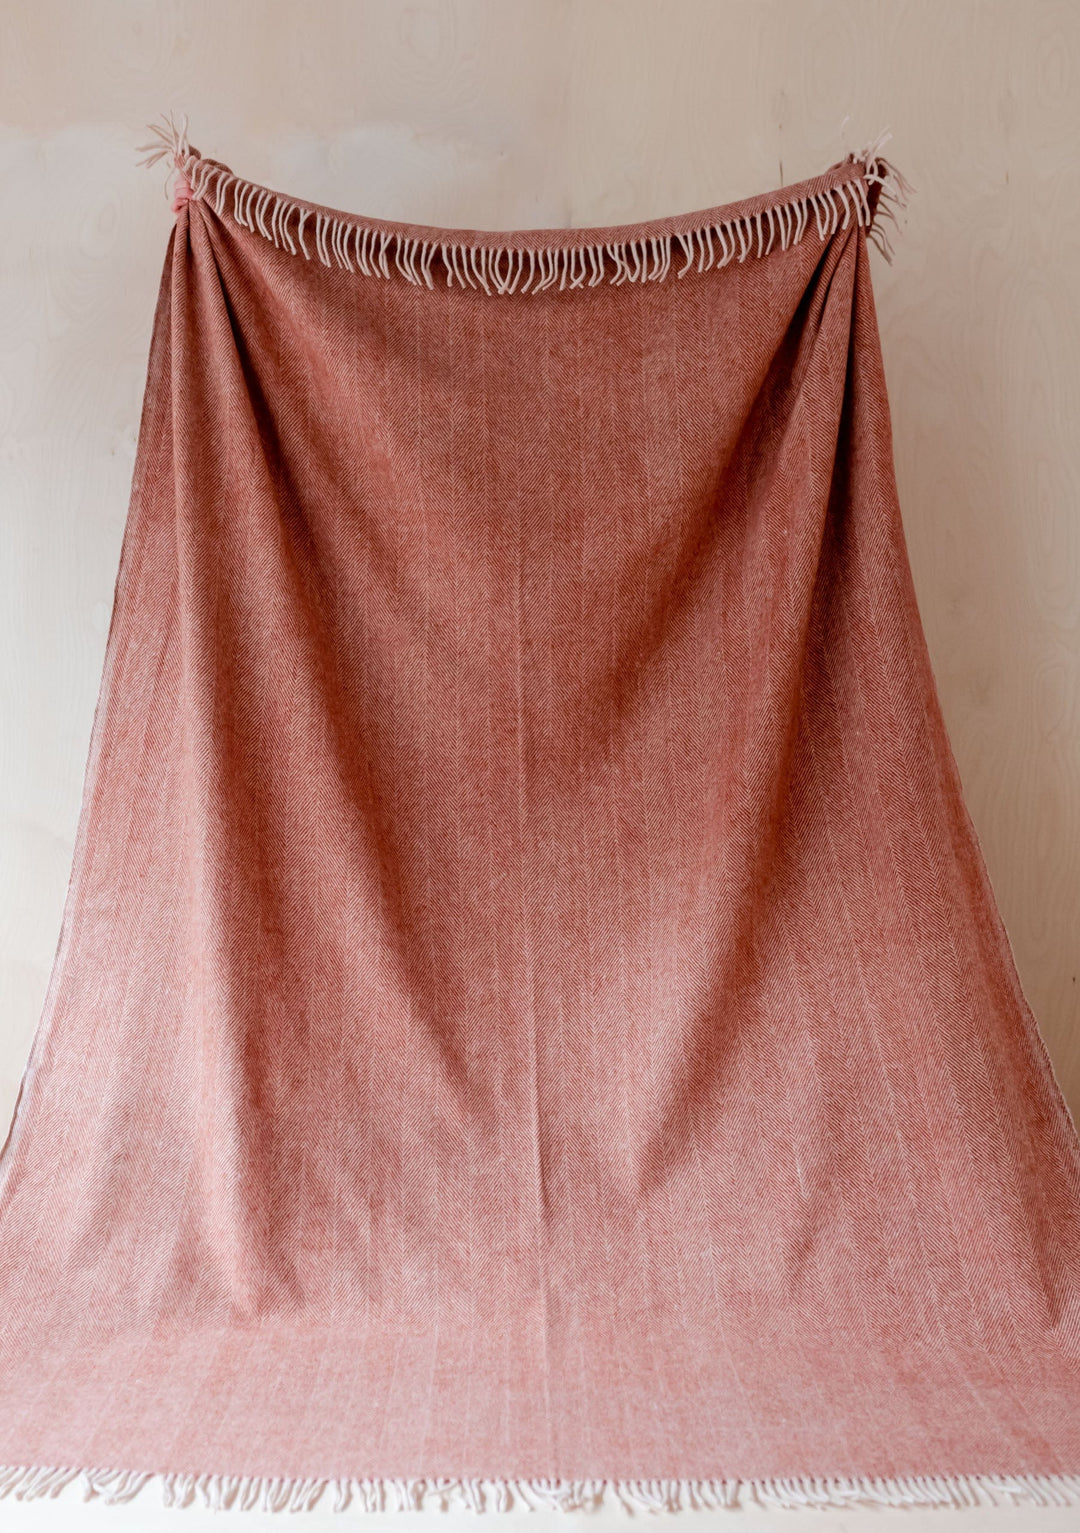 Recycled Wool Extra Large Blanket in Rust Herringbone